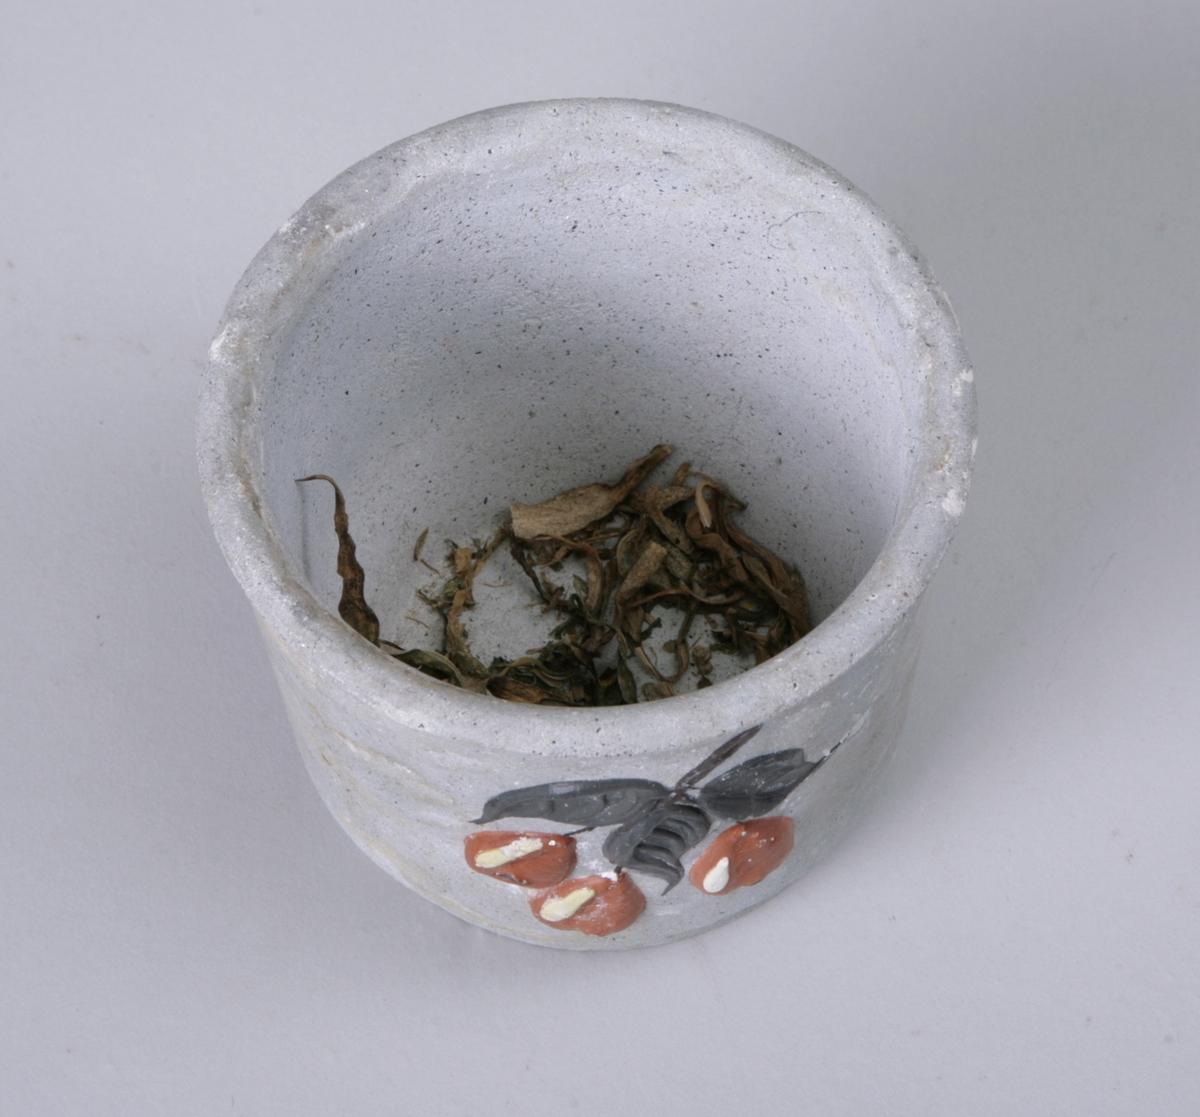 Sylinderformet potte til å sette blomsterpotter i. Dekorert med påmalte blader og bær.